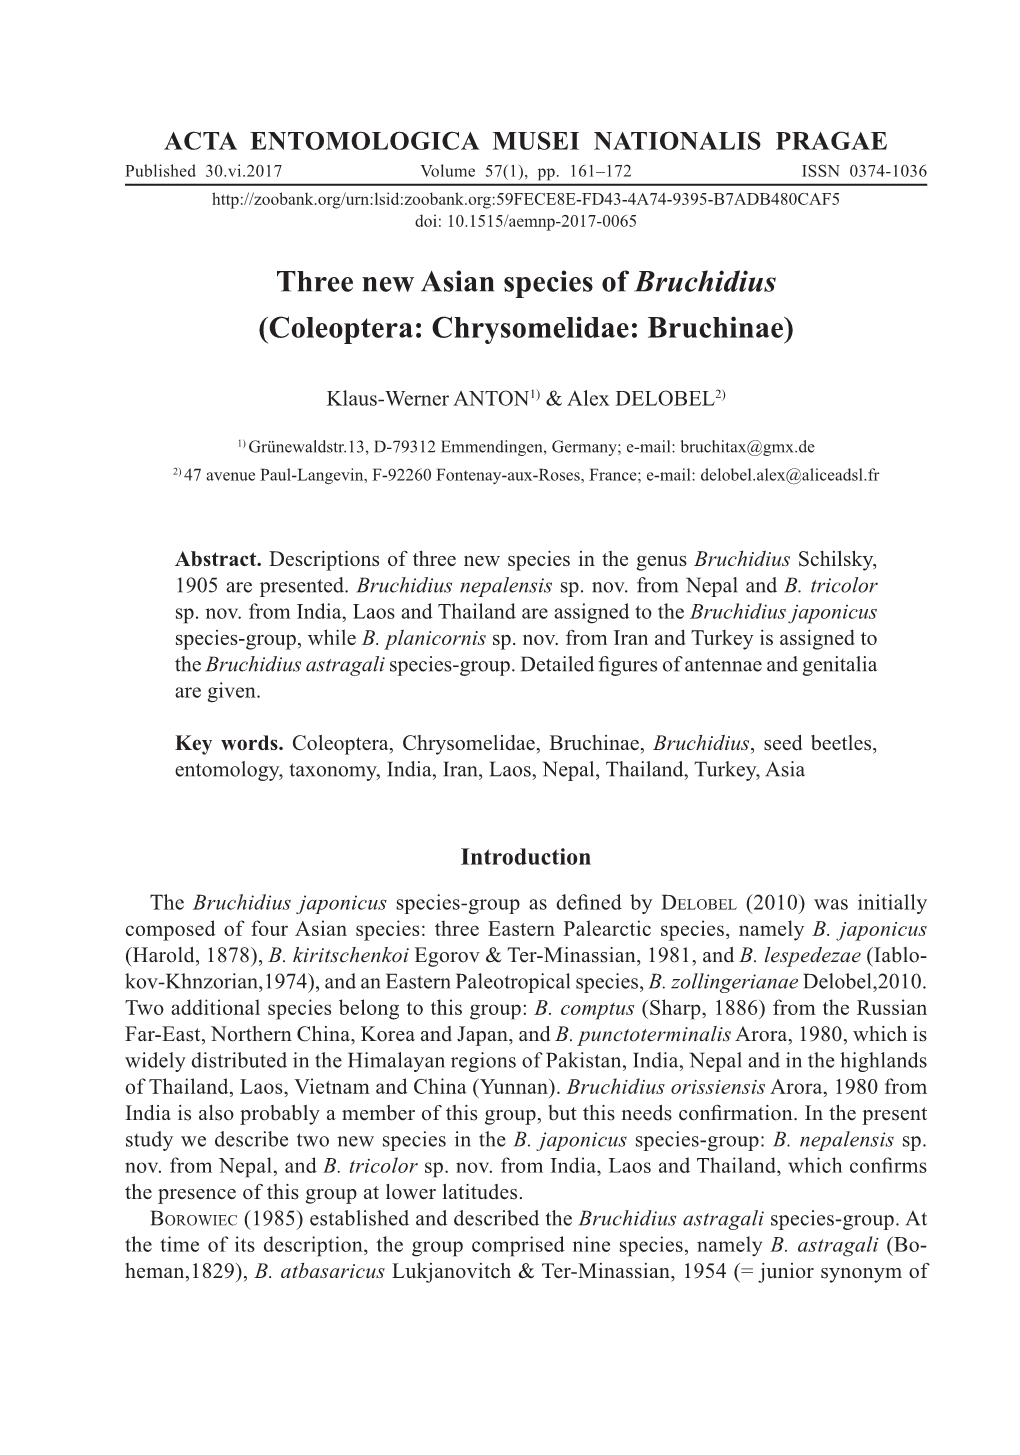 Three New Asian Species of Bruchidius (Coleoptera: Chrysomelidae: Bruchinae)